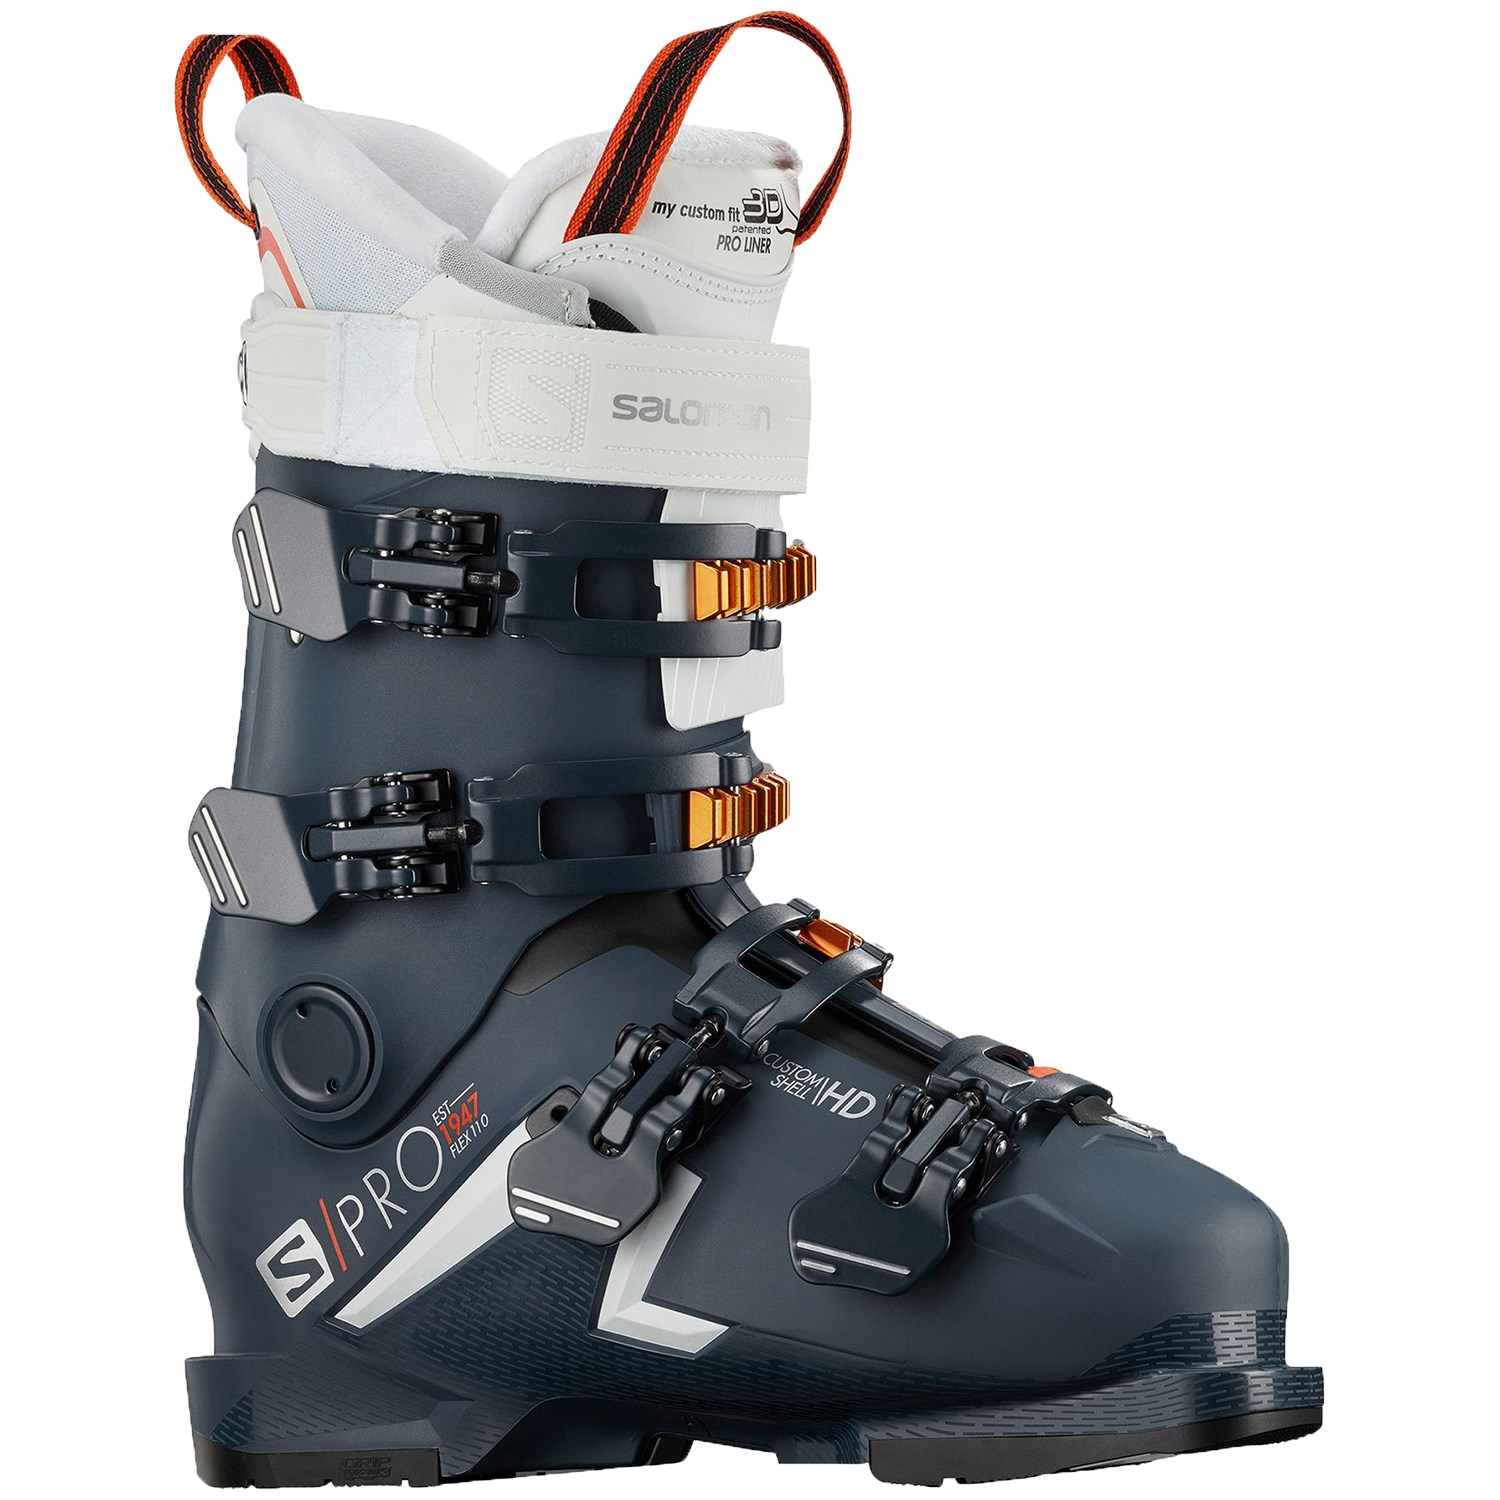 2020 salomon ski boots